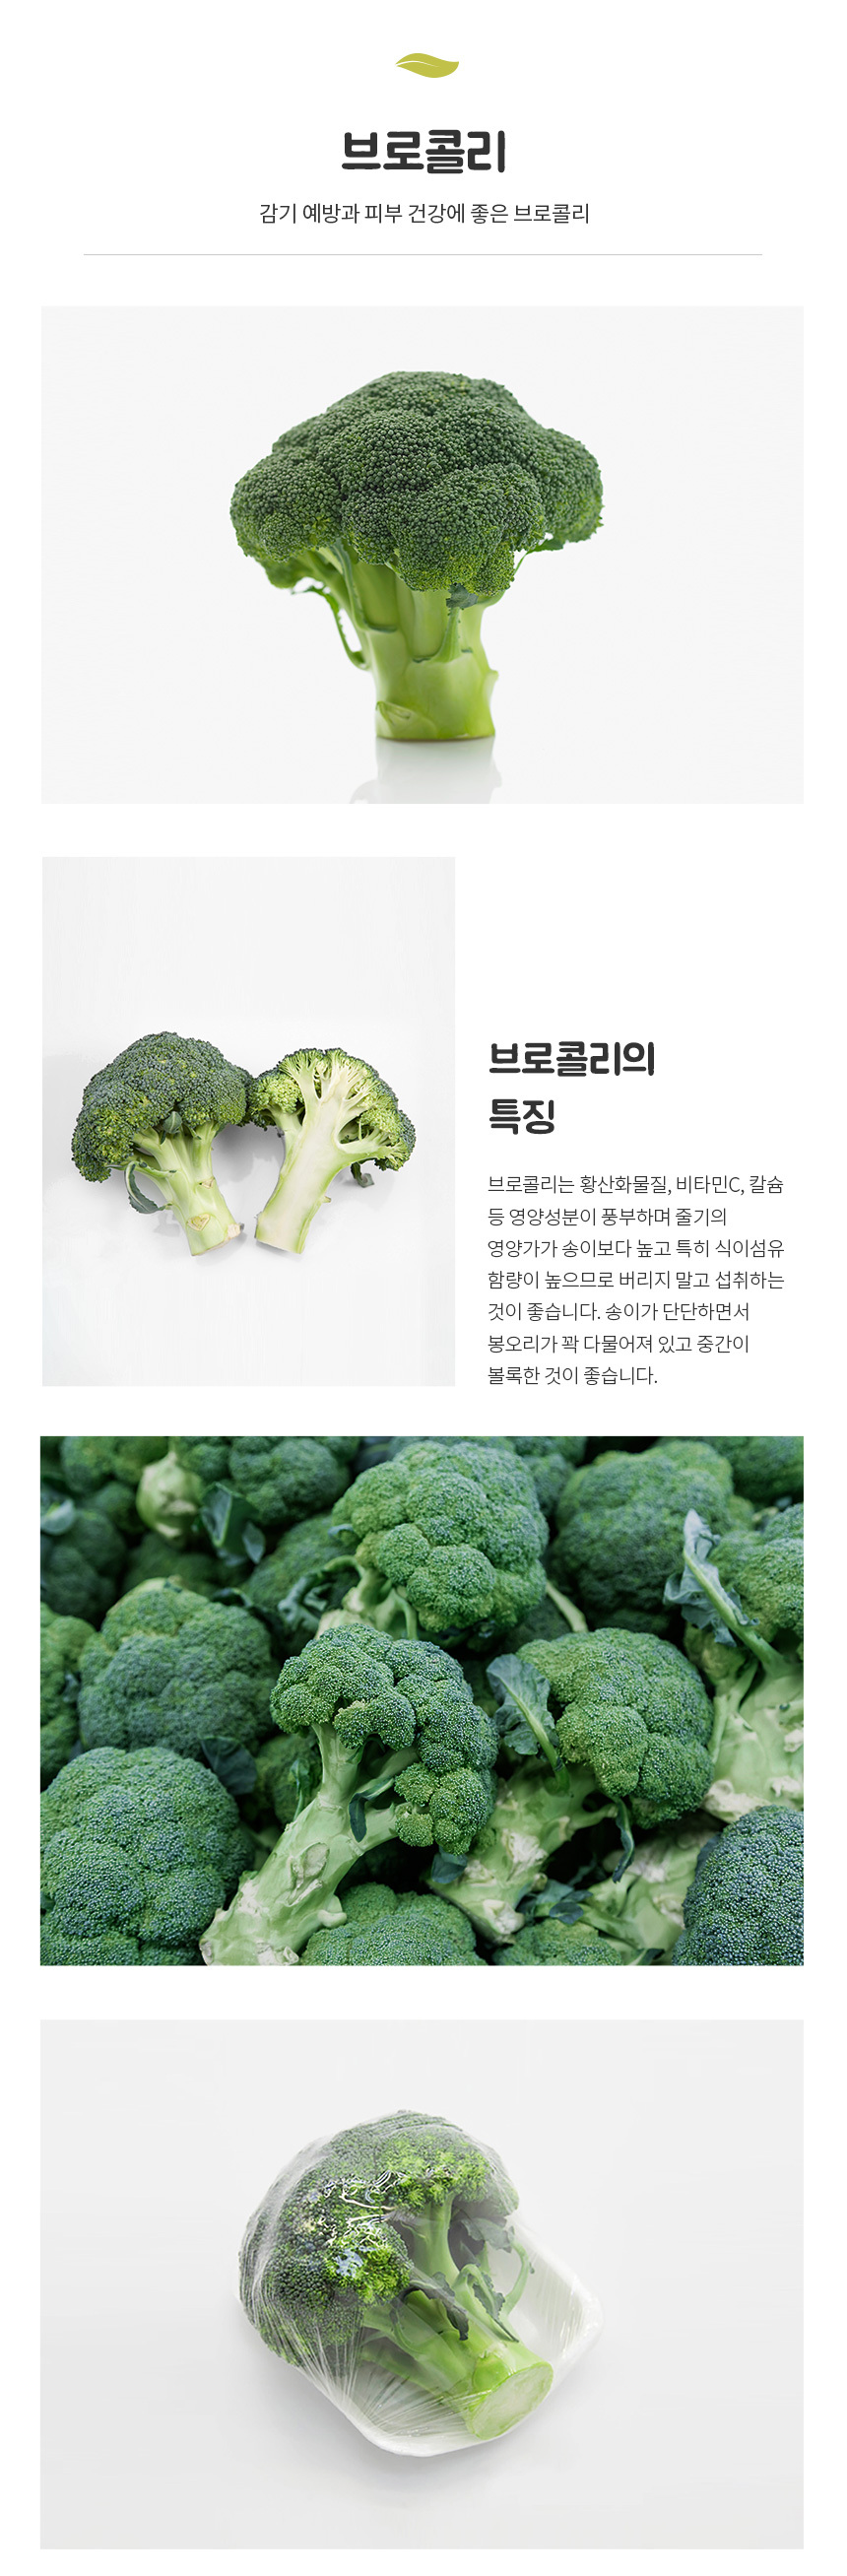 01_broccoli.jpg